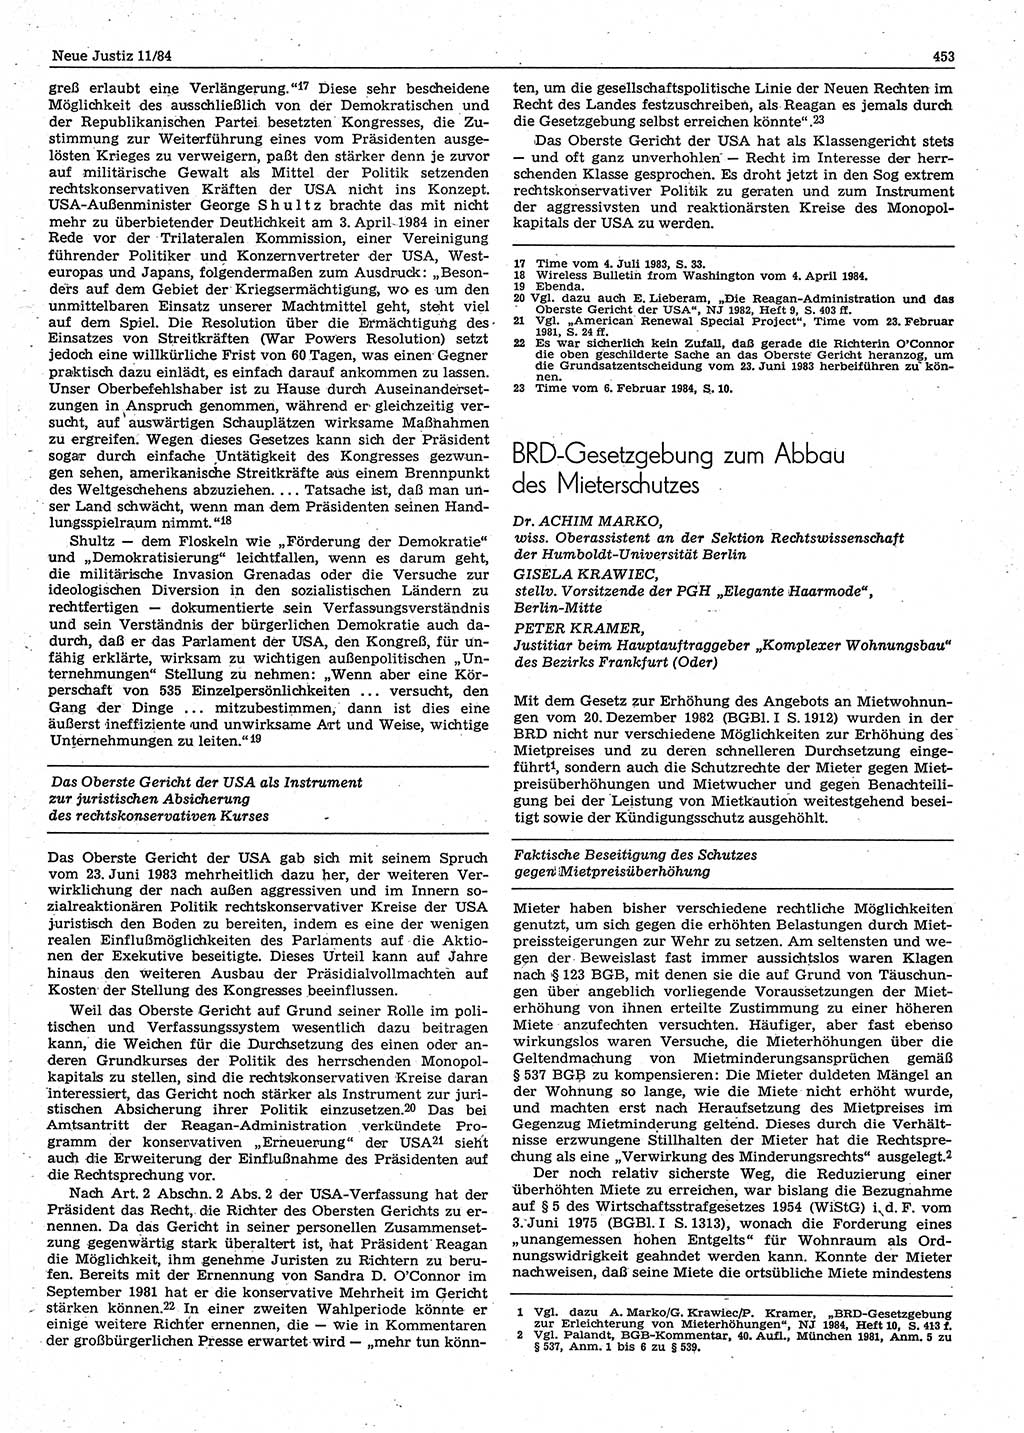 Neue Justiz (NJ), Zeitschrift für sozialistisches Recht und Gesetzlichkeit [Deutsche Demokratische Republik (DDR)], 38. Jahrgang 1984, Seite 453 (NJ DDR 1984, S. 453)